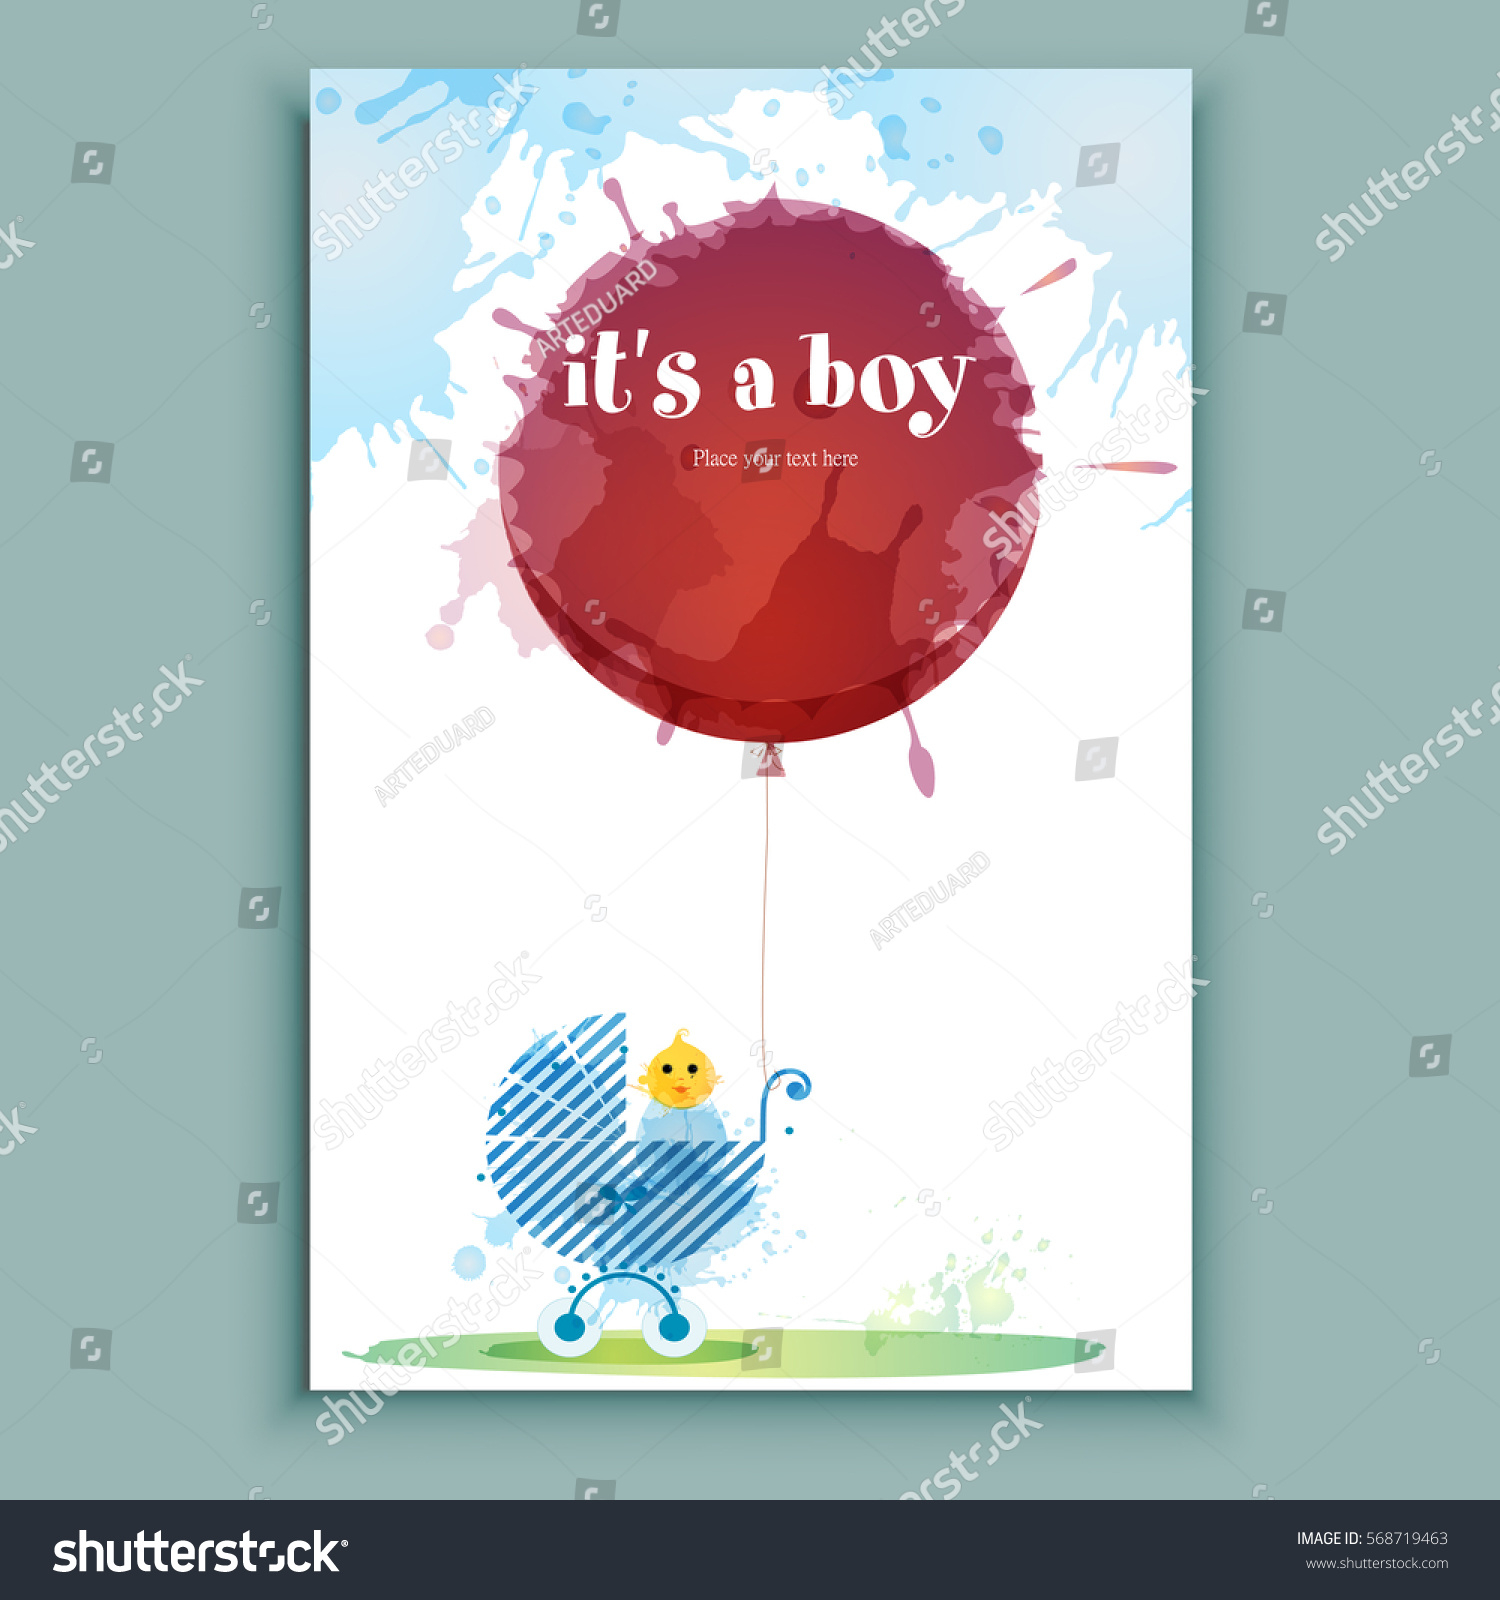 Boys Birthday Card Ideas Birthday Card Ideas For A Boy Child Christian Boyfriend Handmade